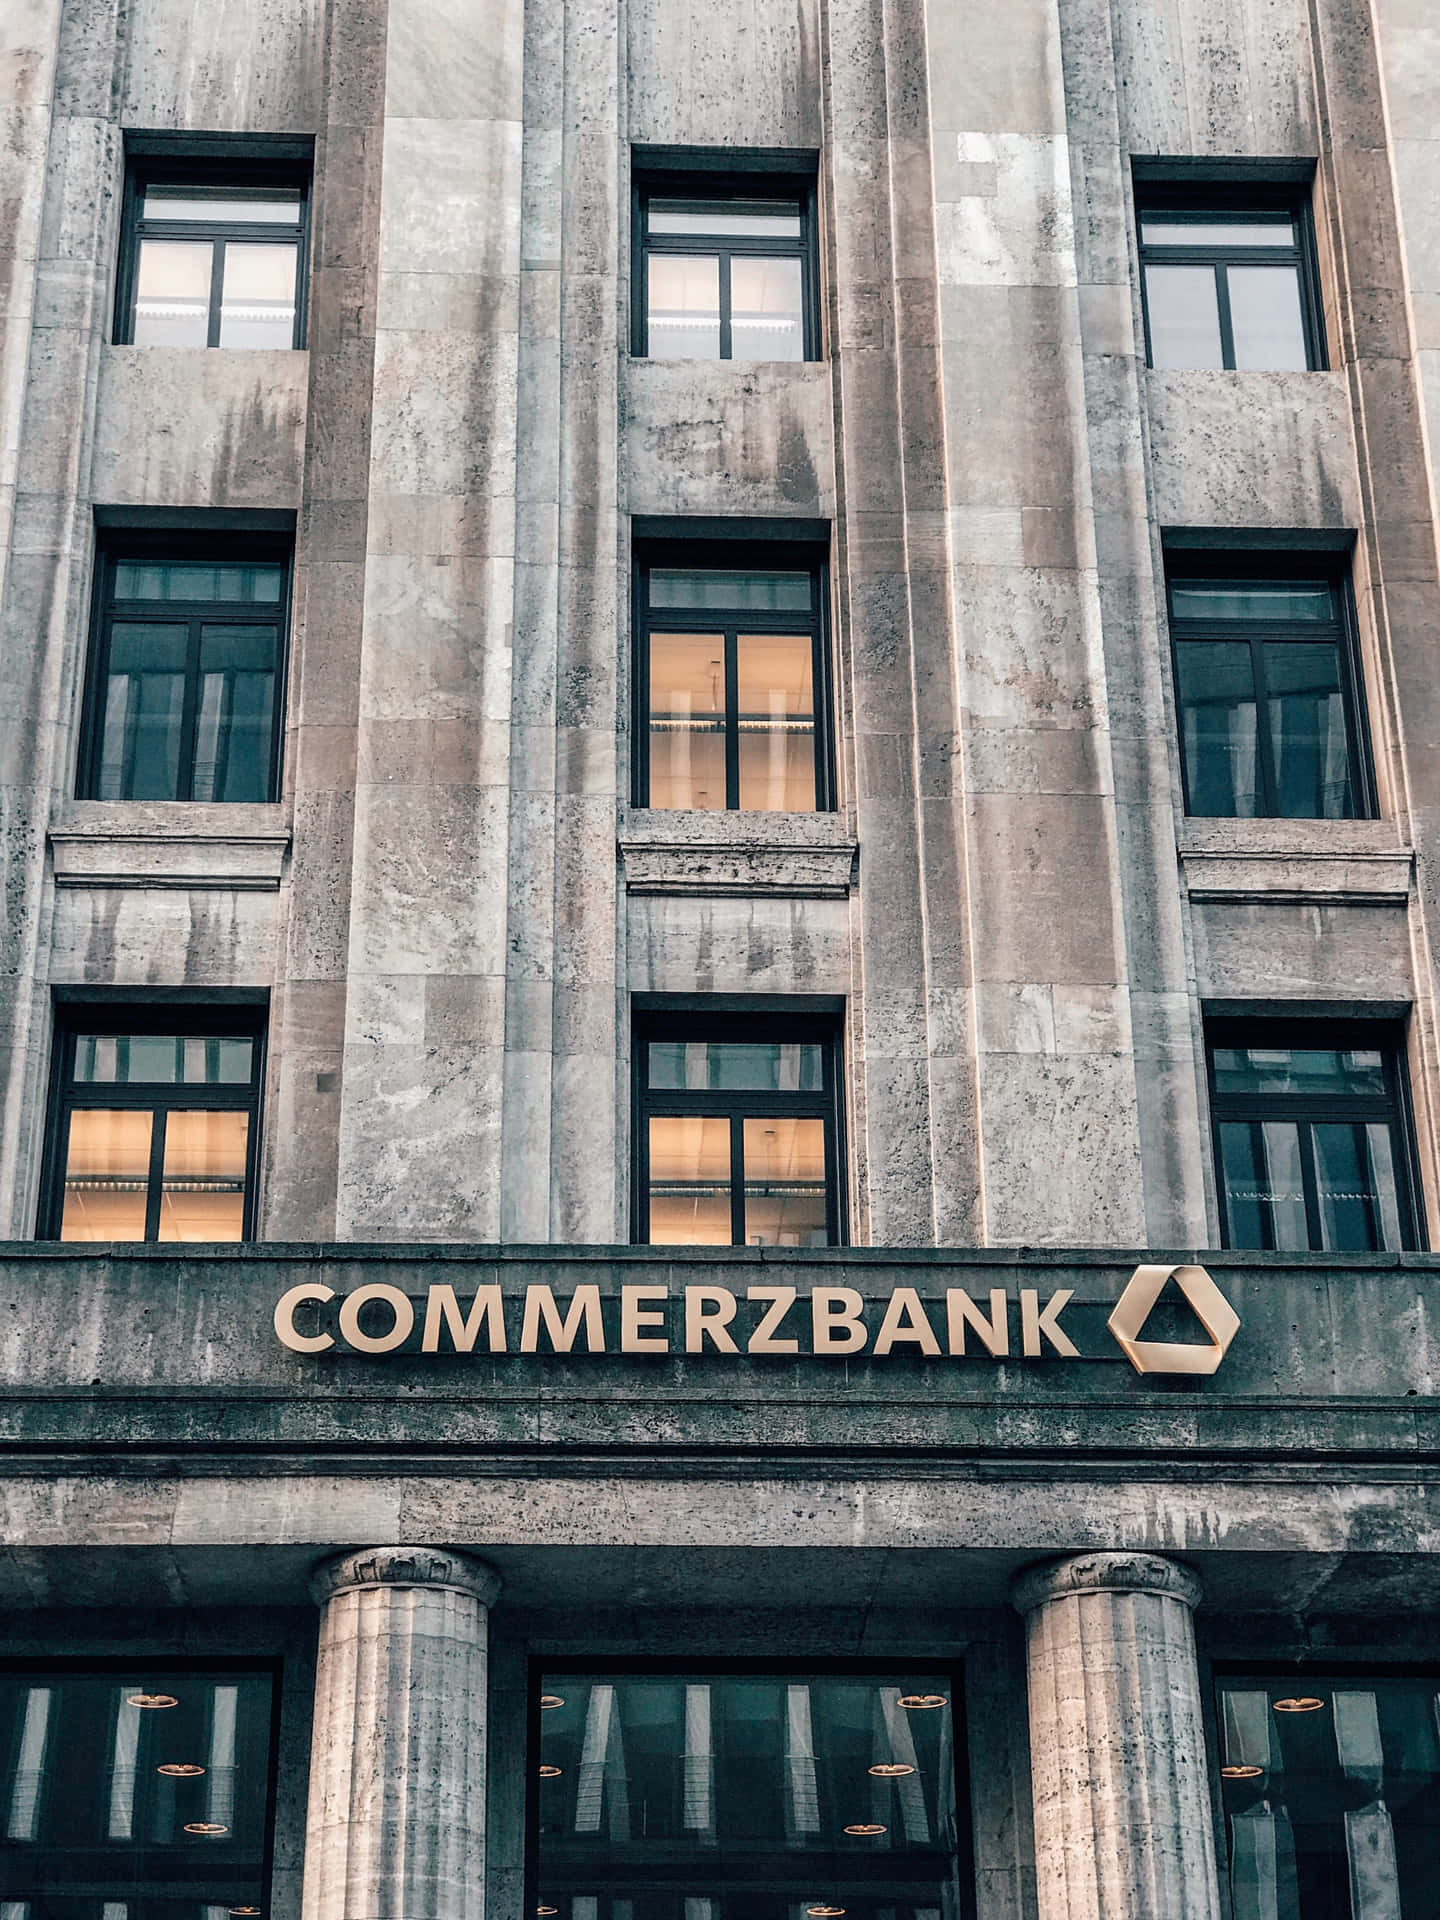 Eingebäude Mit Einem Schild, Auf Dem Commerzbank Steht.